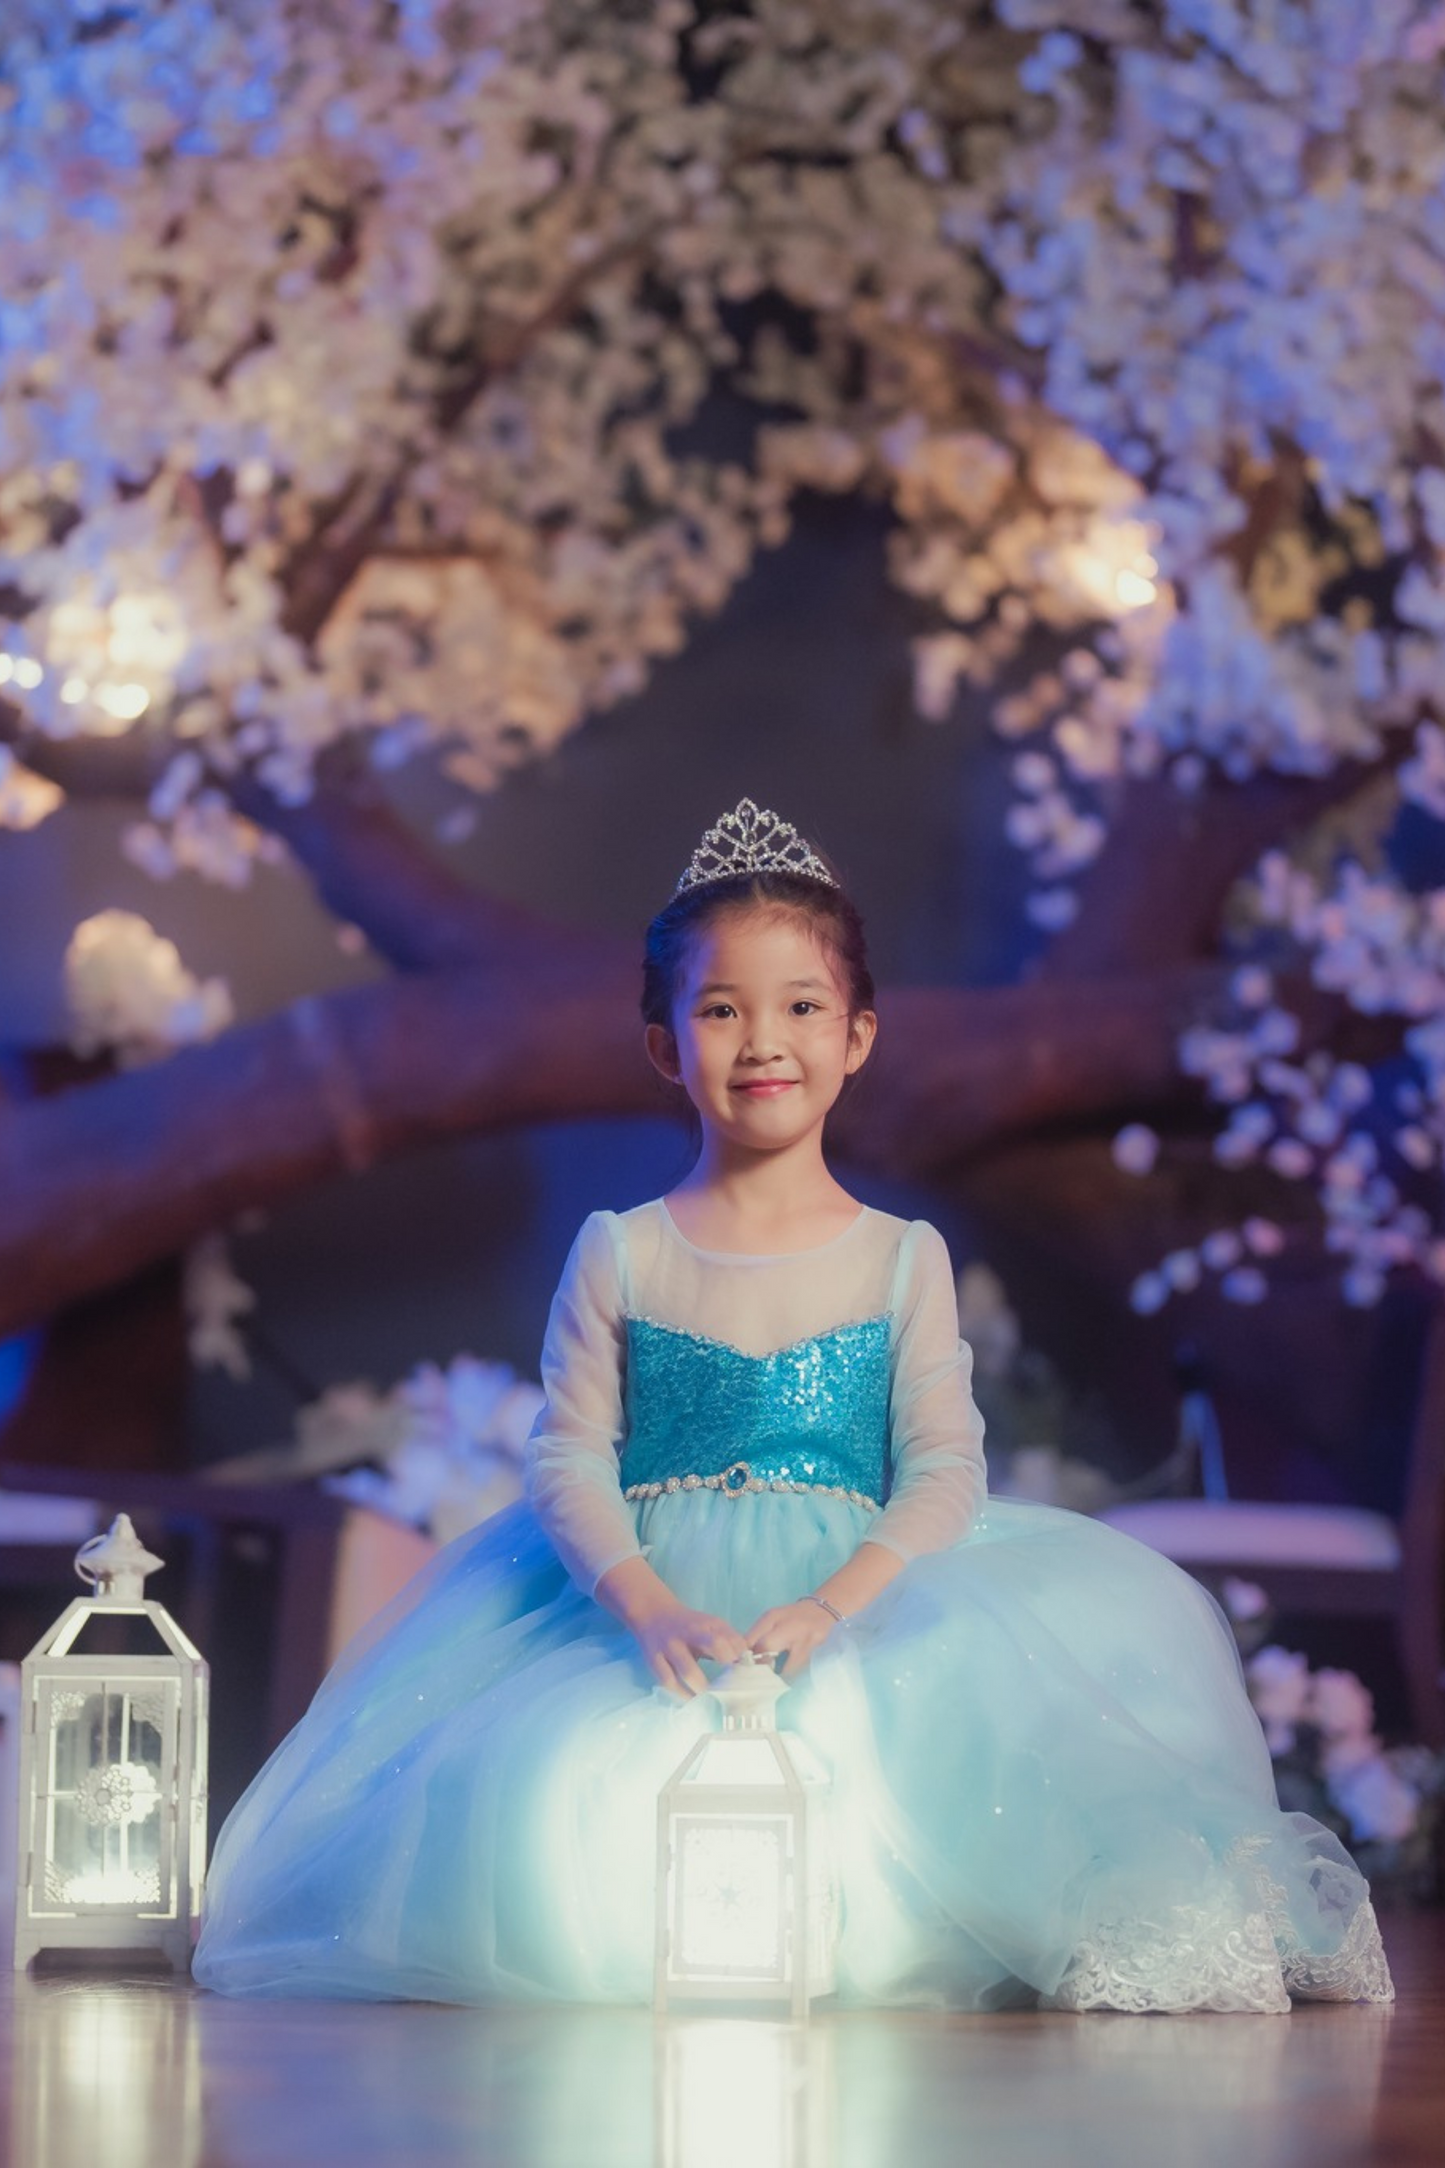 Queen Elsa Blue Sequin Gown